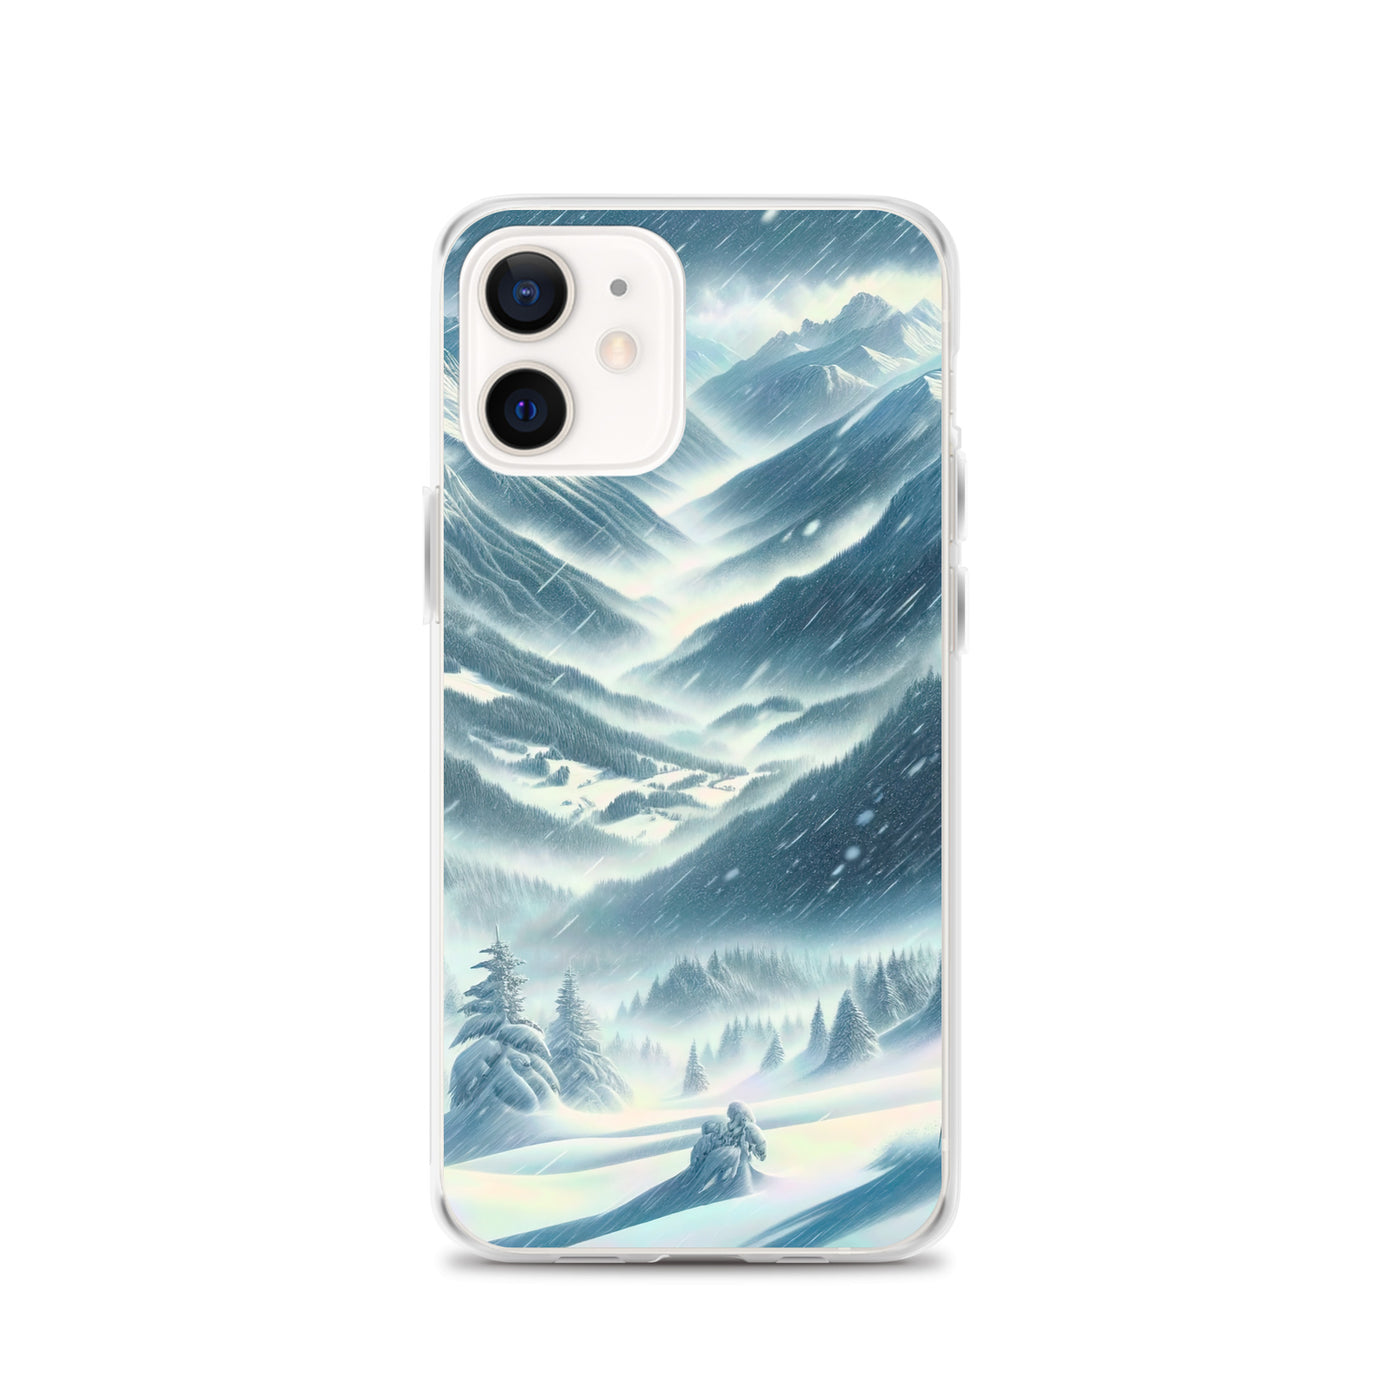 Alpine Wildnis im Wintersturm mit Skifahrer, verschneite Landschaft - iPhone Schutzhülle (durchsichtig) klettern ski xxx yyy zzz iPhone 12